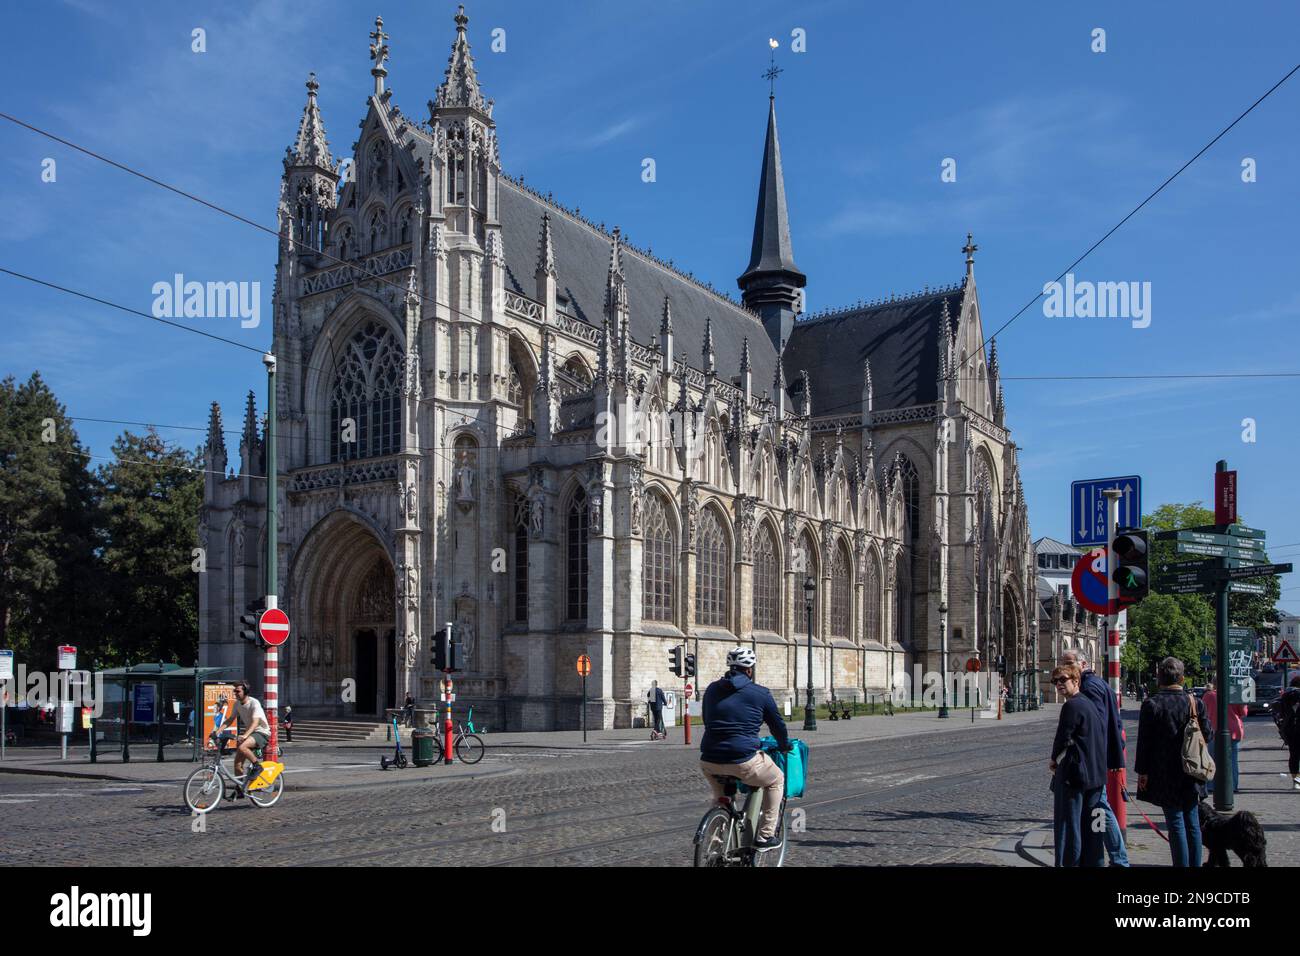 Die Kirche unserer Lieben Frau der Siege im Sablon in Brüssel. Belgien. Eine gotische Kirche aus dem 15. Jahrhundert. Stockfoto